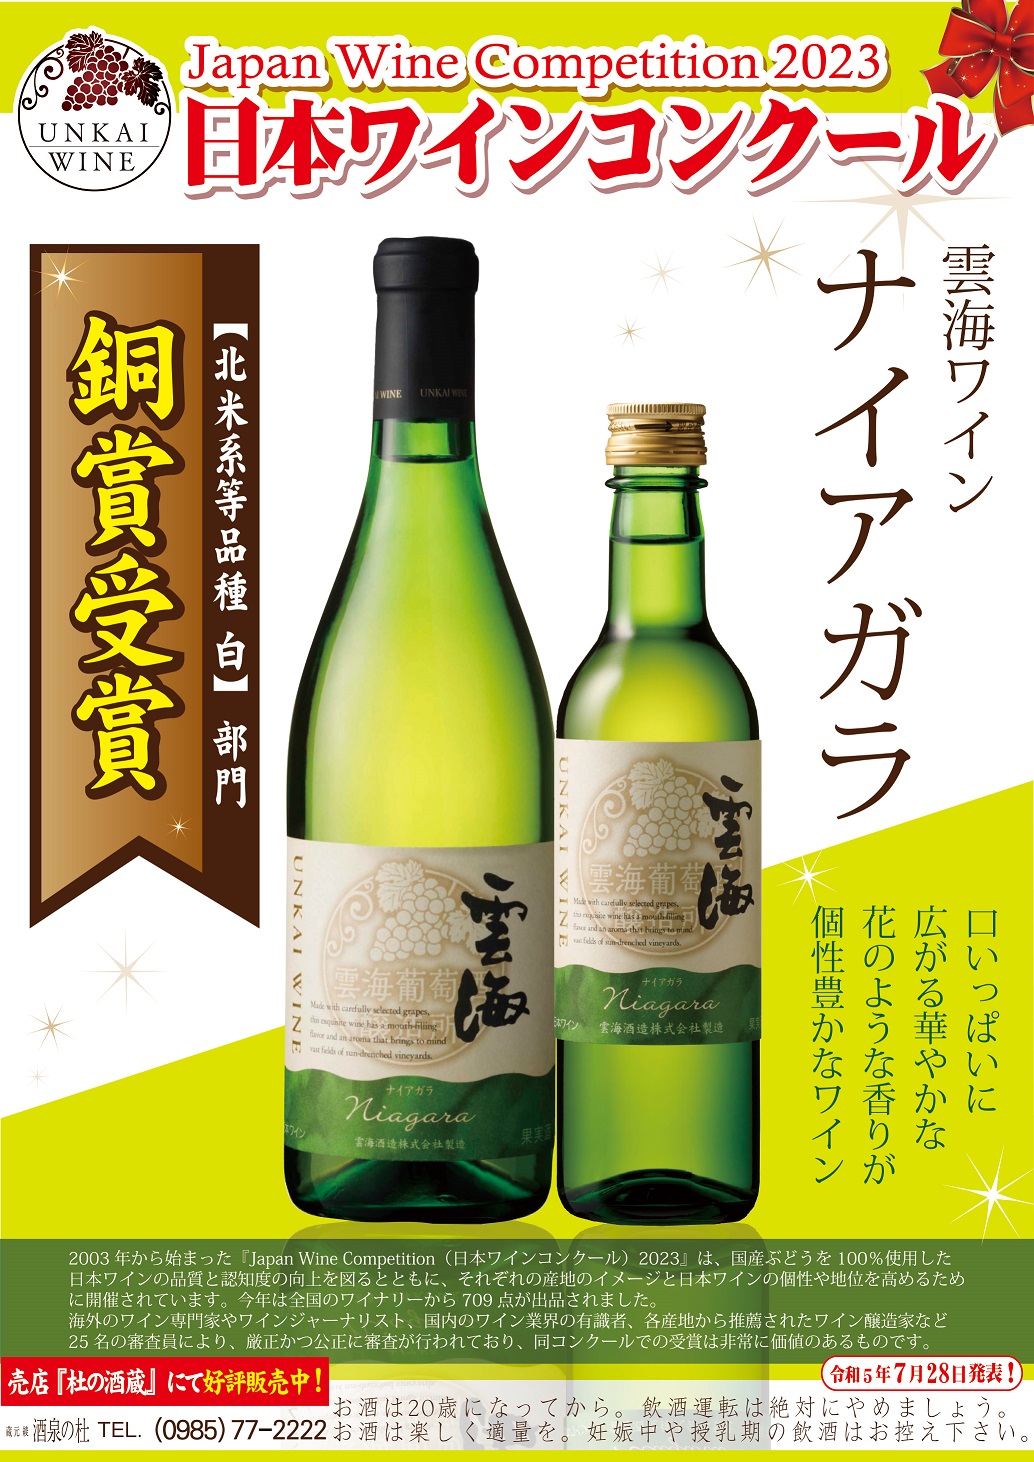 <strong>『Japan Wine Competition2023』で、 雲海ワインの「ナイアガラ」と「デラウェア」が銅賞を受賞。</strong>